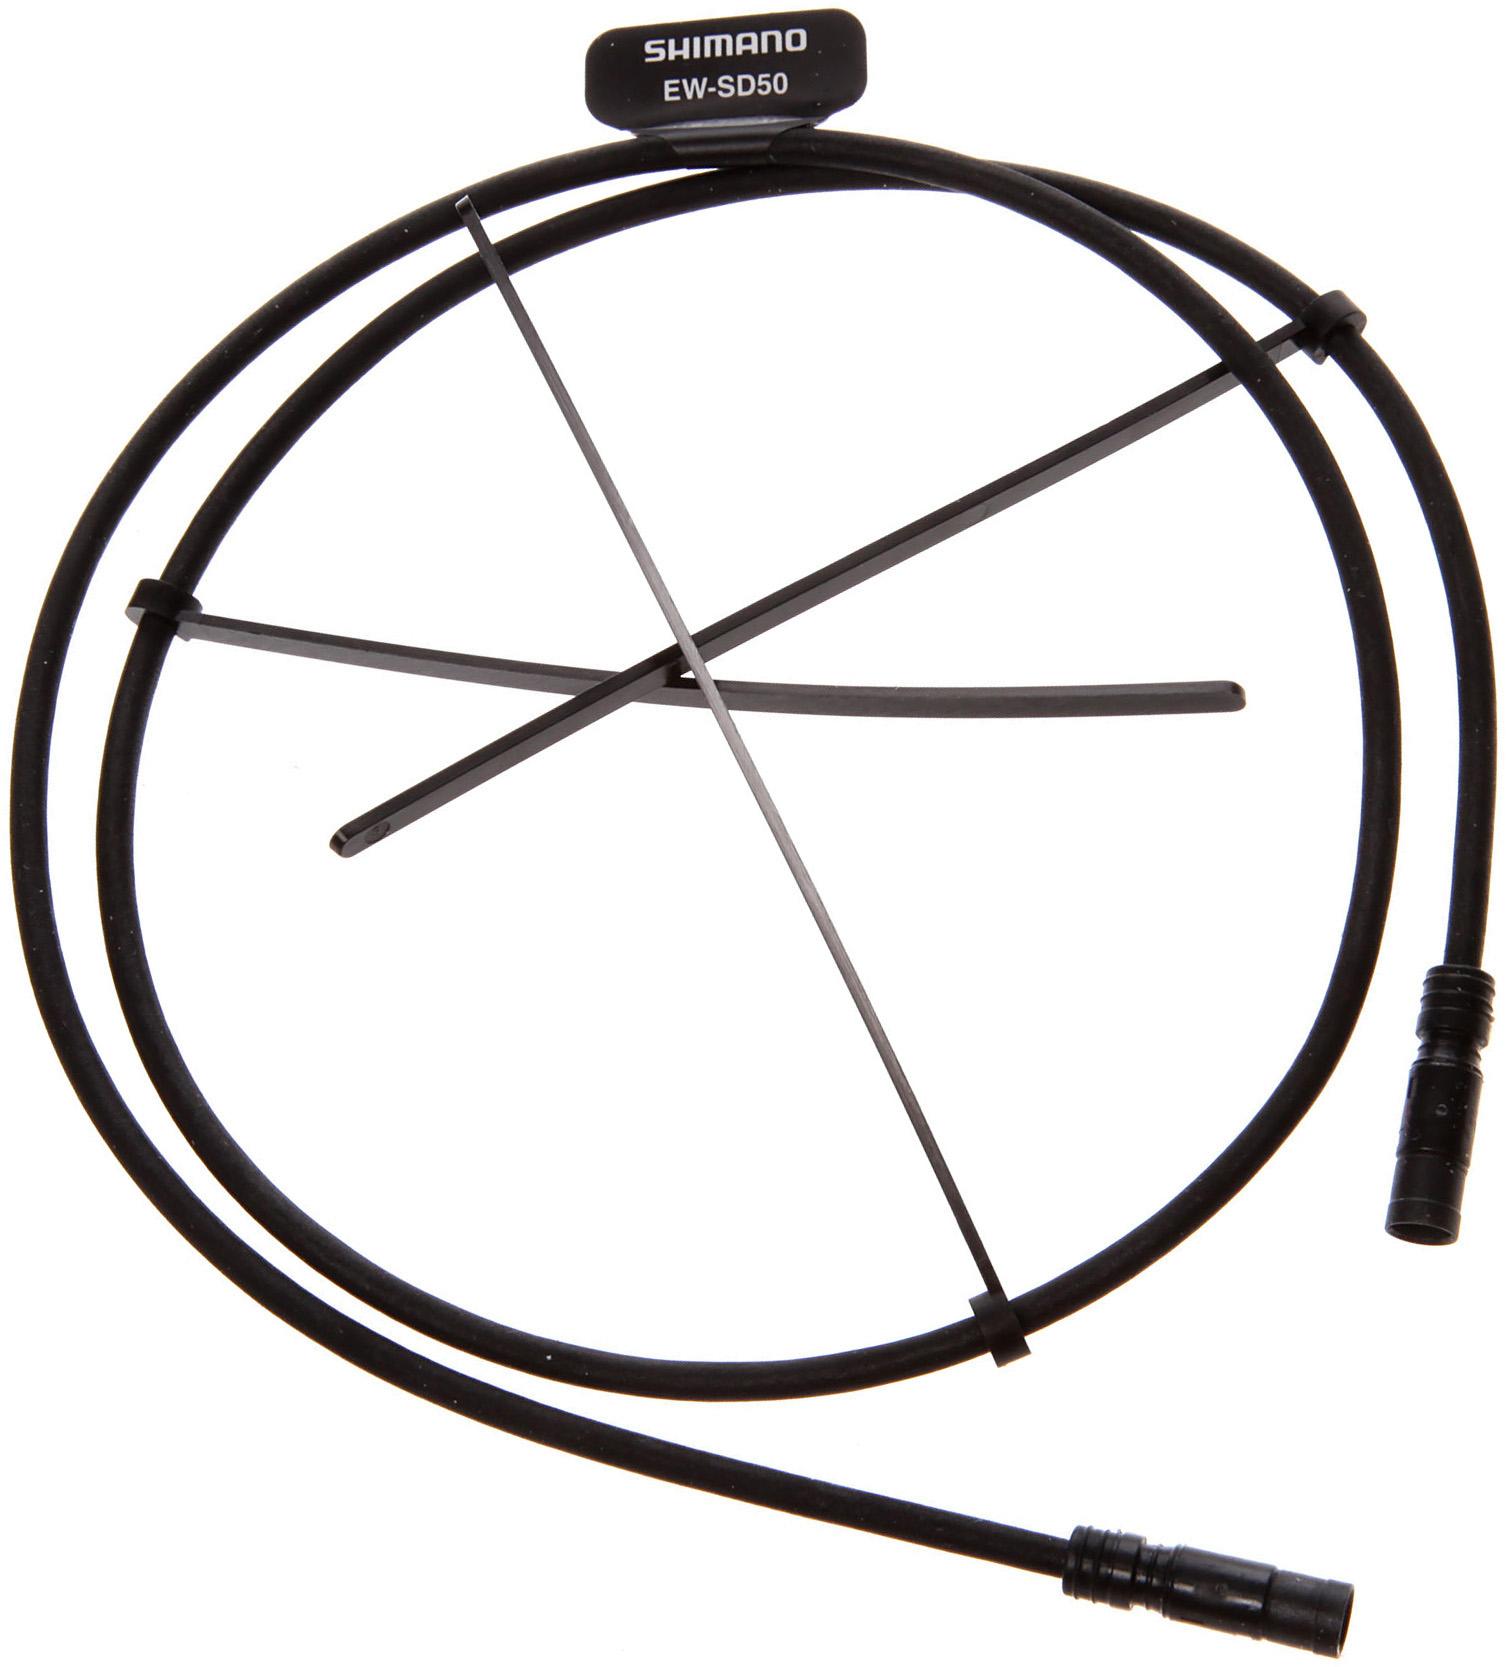 Shimano Ew-sd50 E-tube Di2 Cable - Black